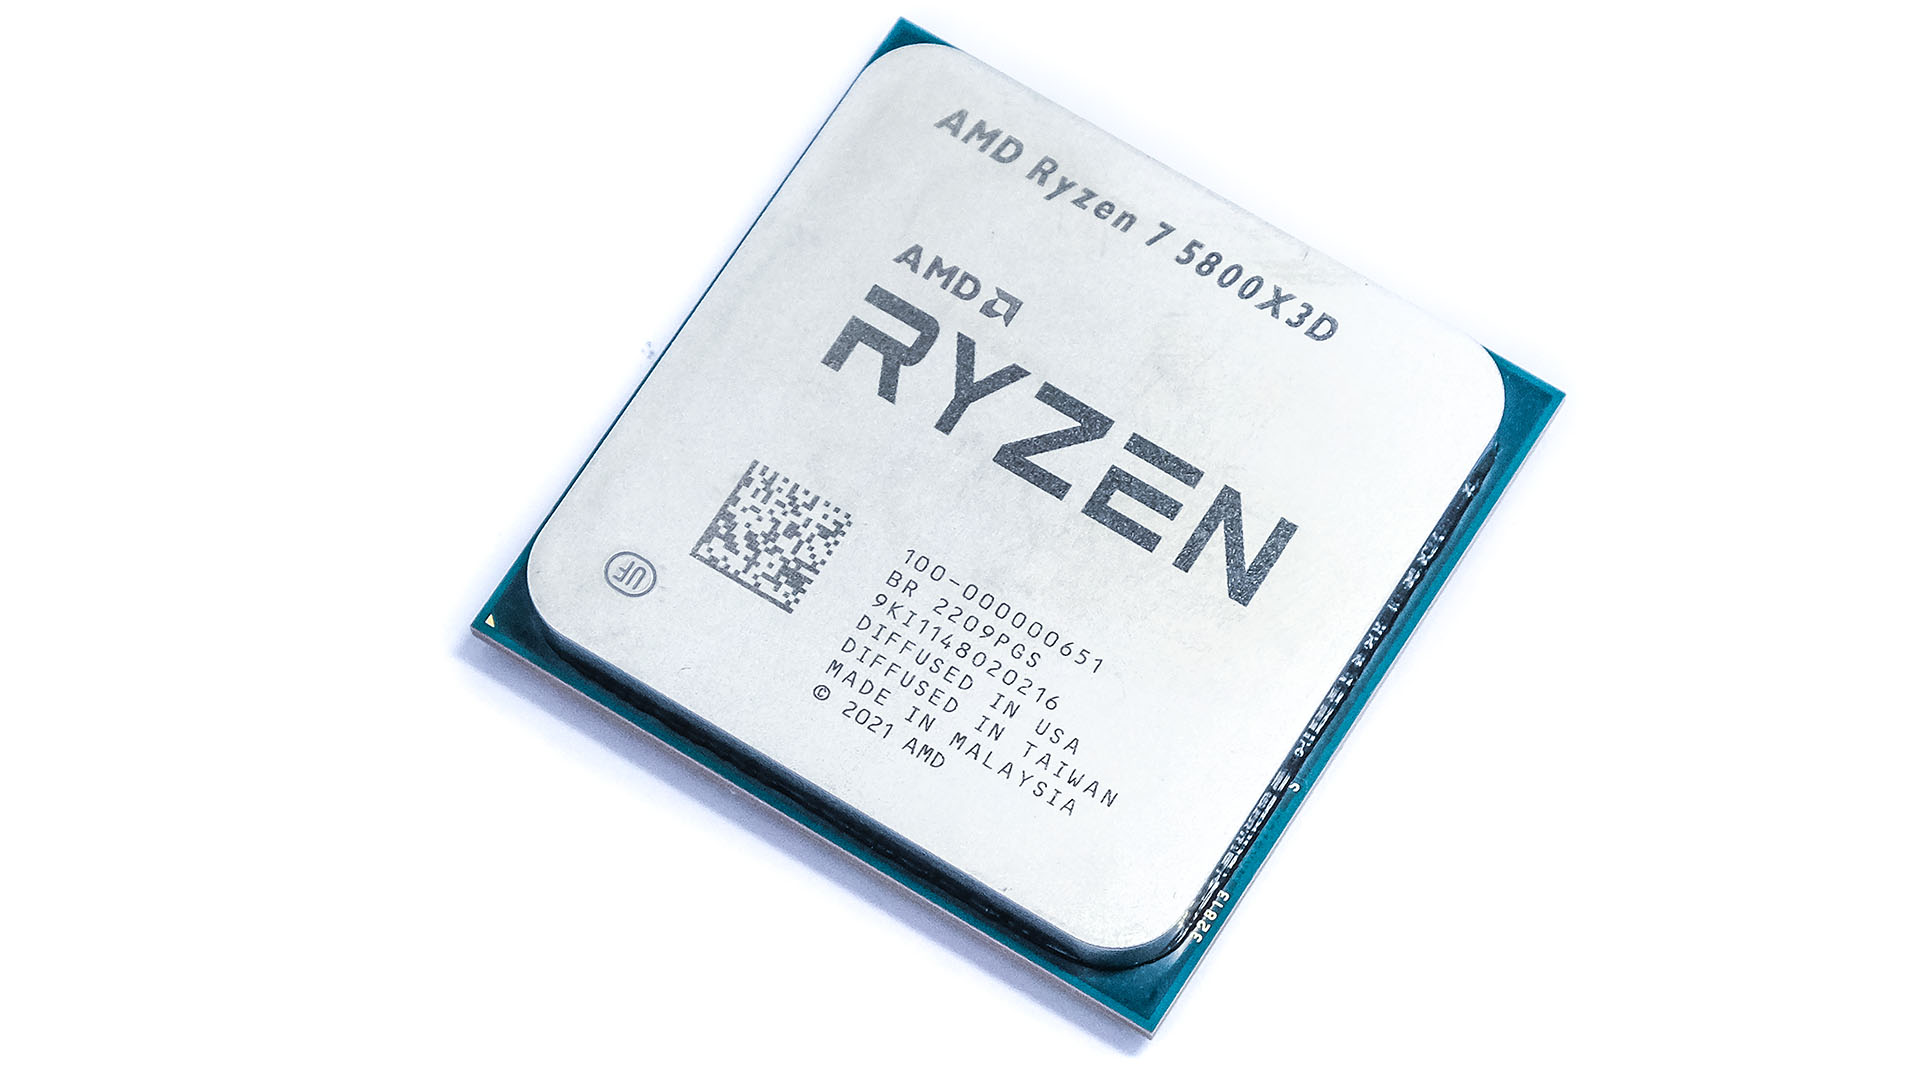 AMD Ryzen 7 5800X3D review